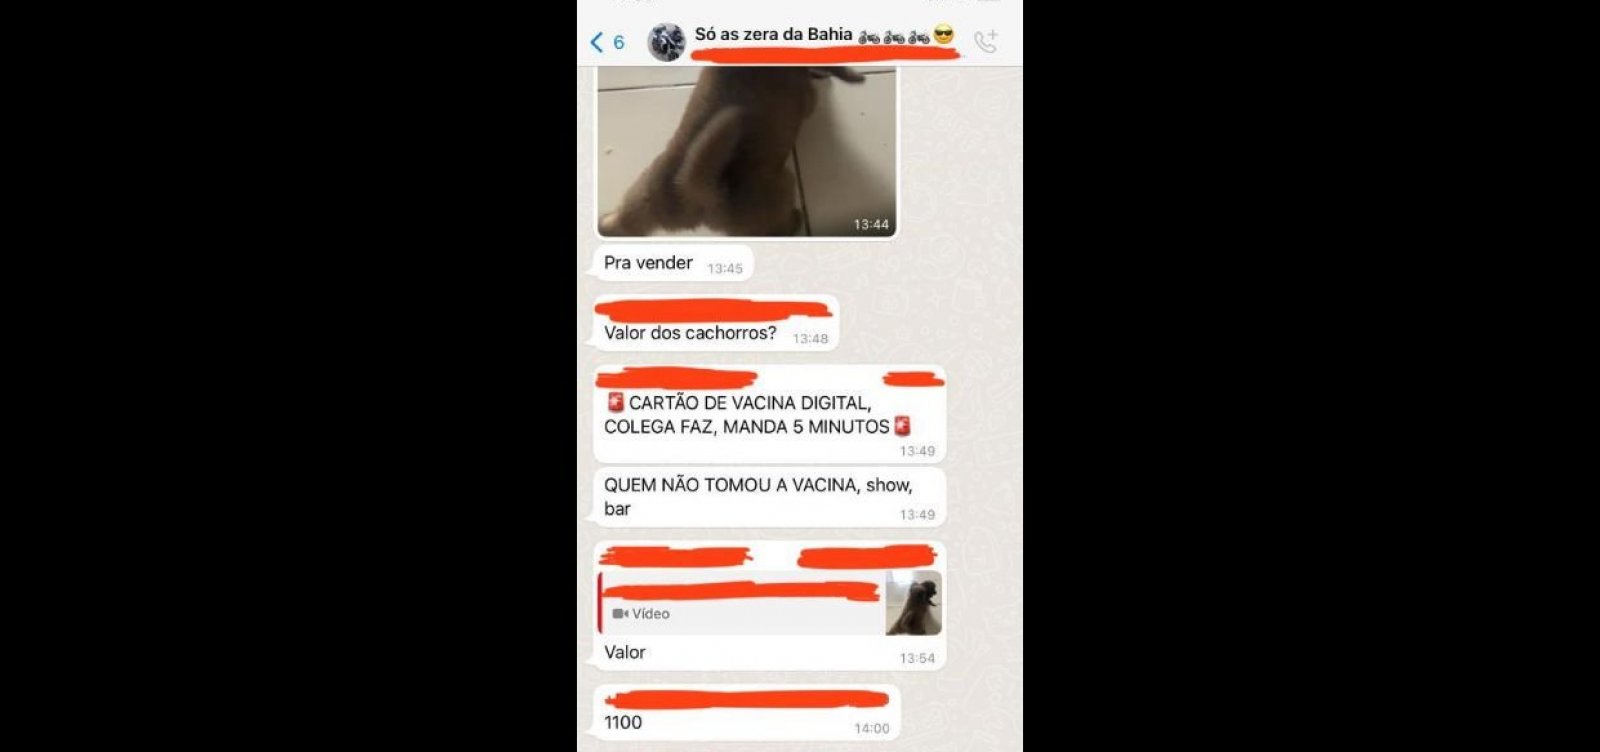 Homem anuncia venda de cartão de vacina em grupo de WhatsApp da Bahia